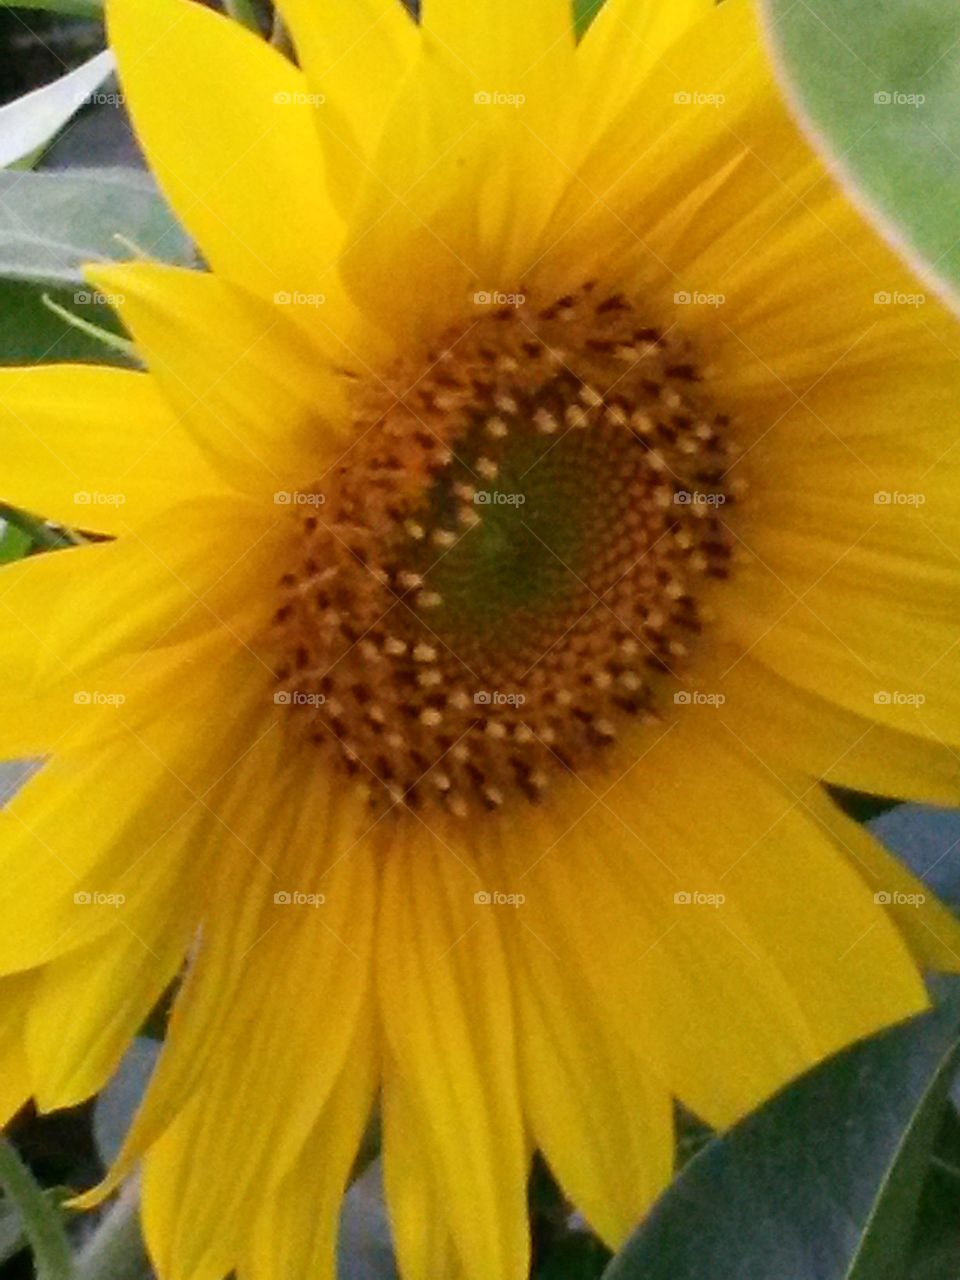 Nice sunflower